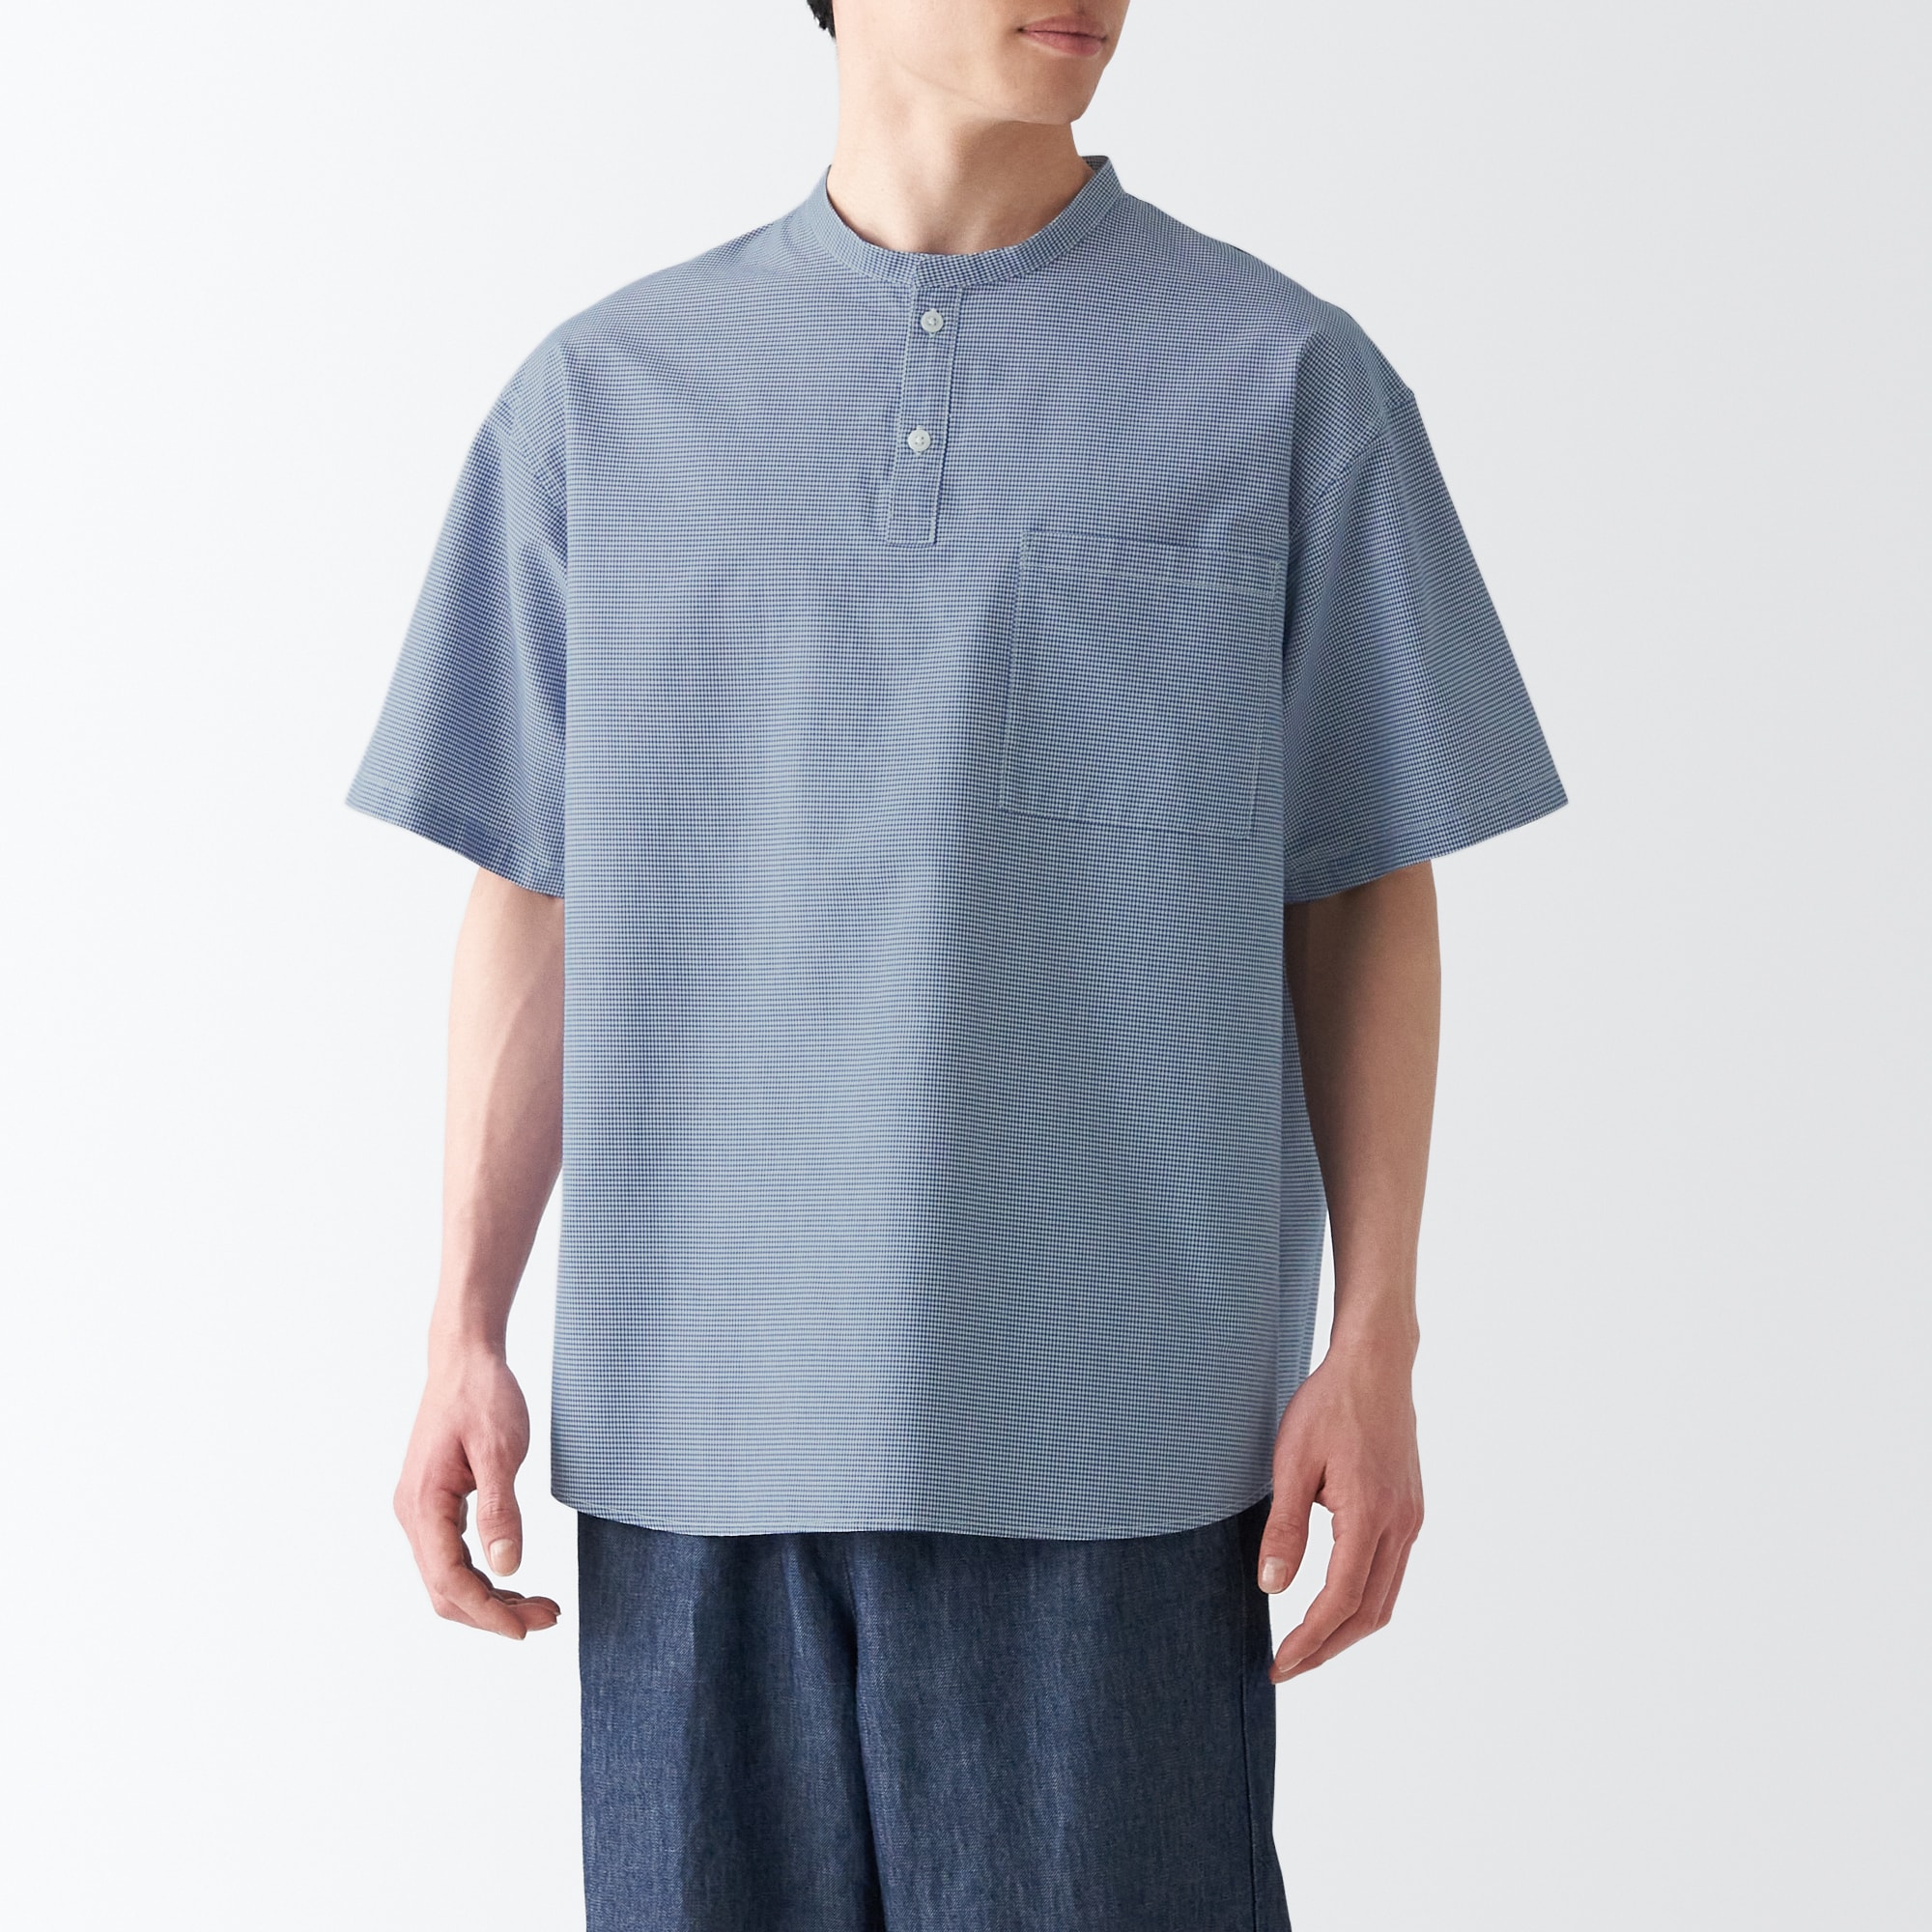 무인양품 일본 일본 종이 혼합 스탠드 칼라 셔츠